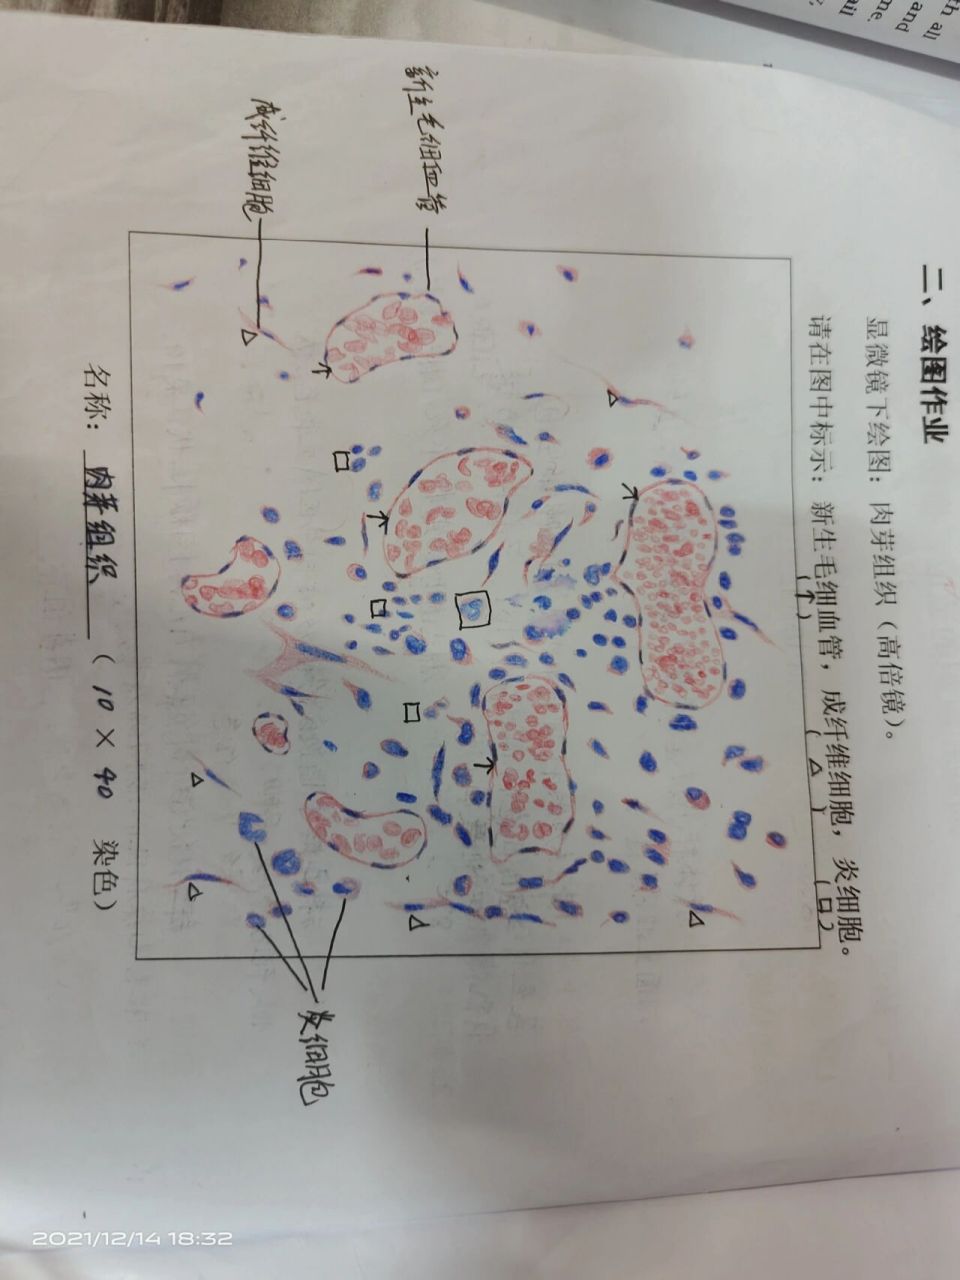 病理肉芽组织红蓝绘图图片